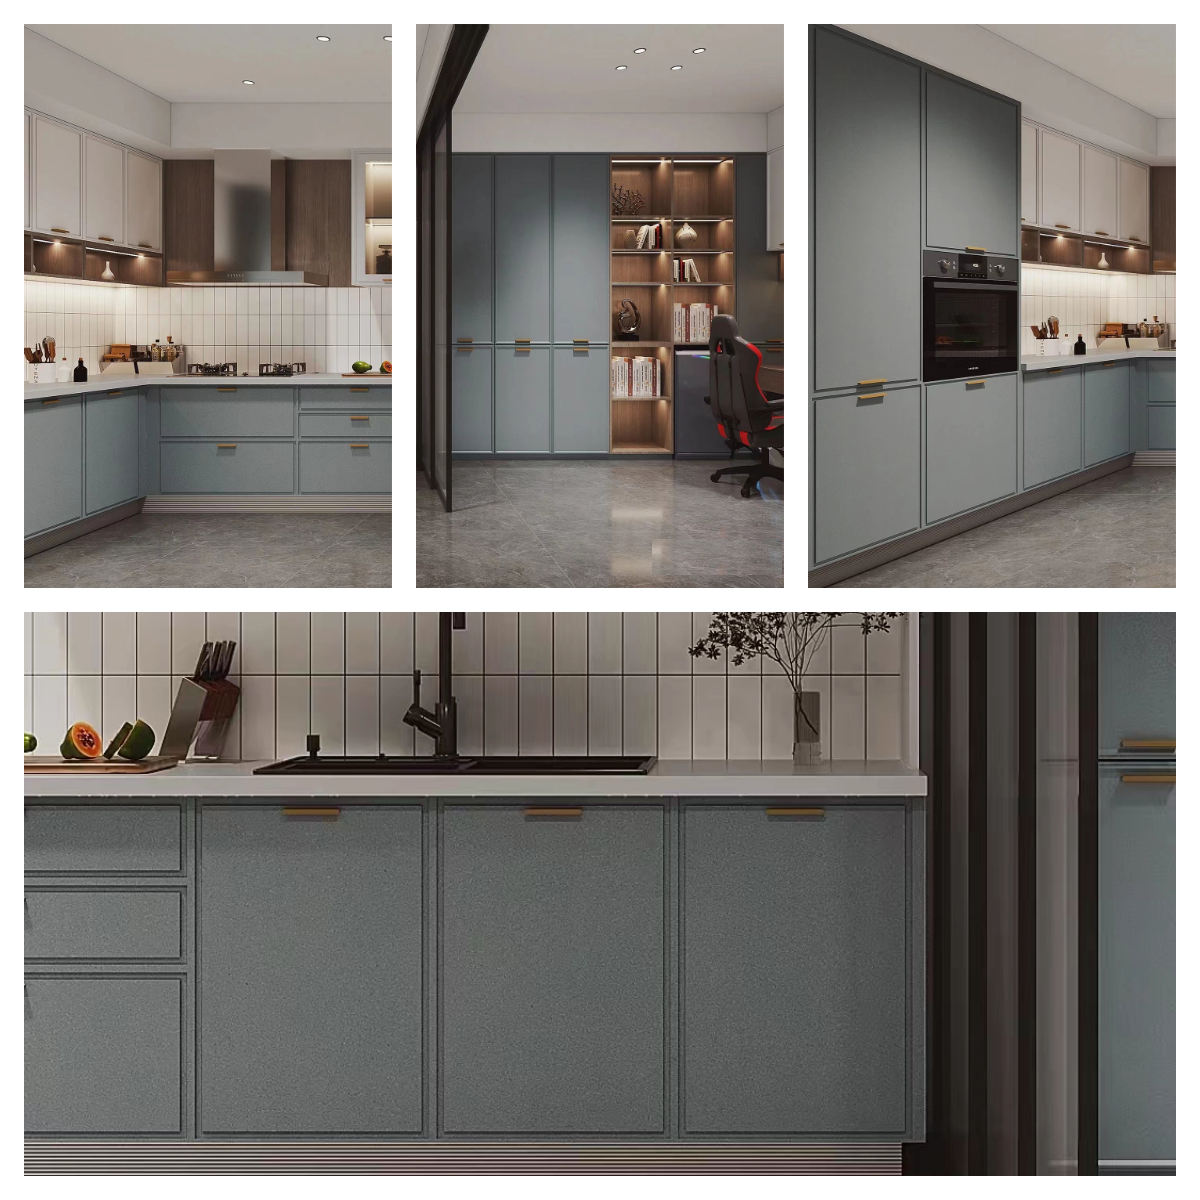 Blue kitchen cabinet